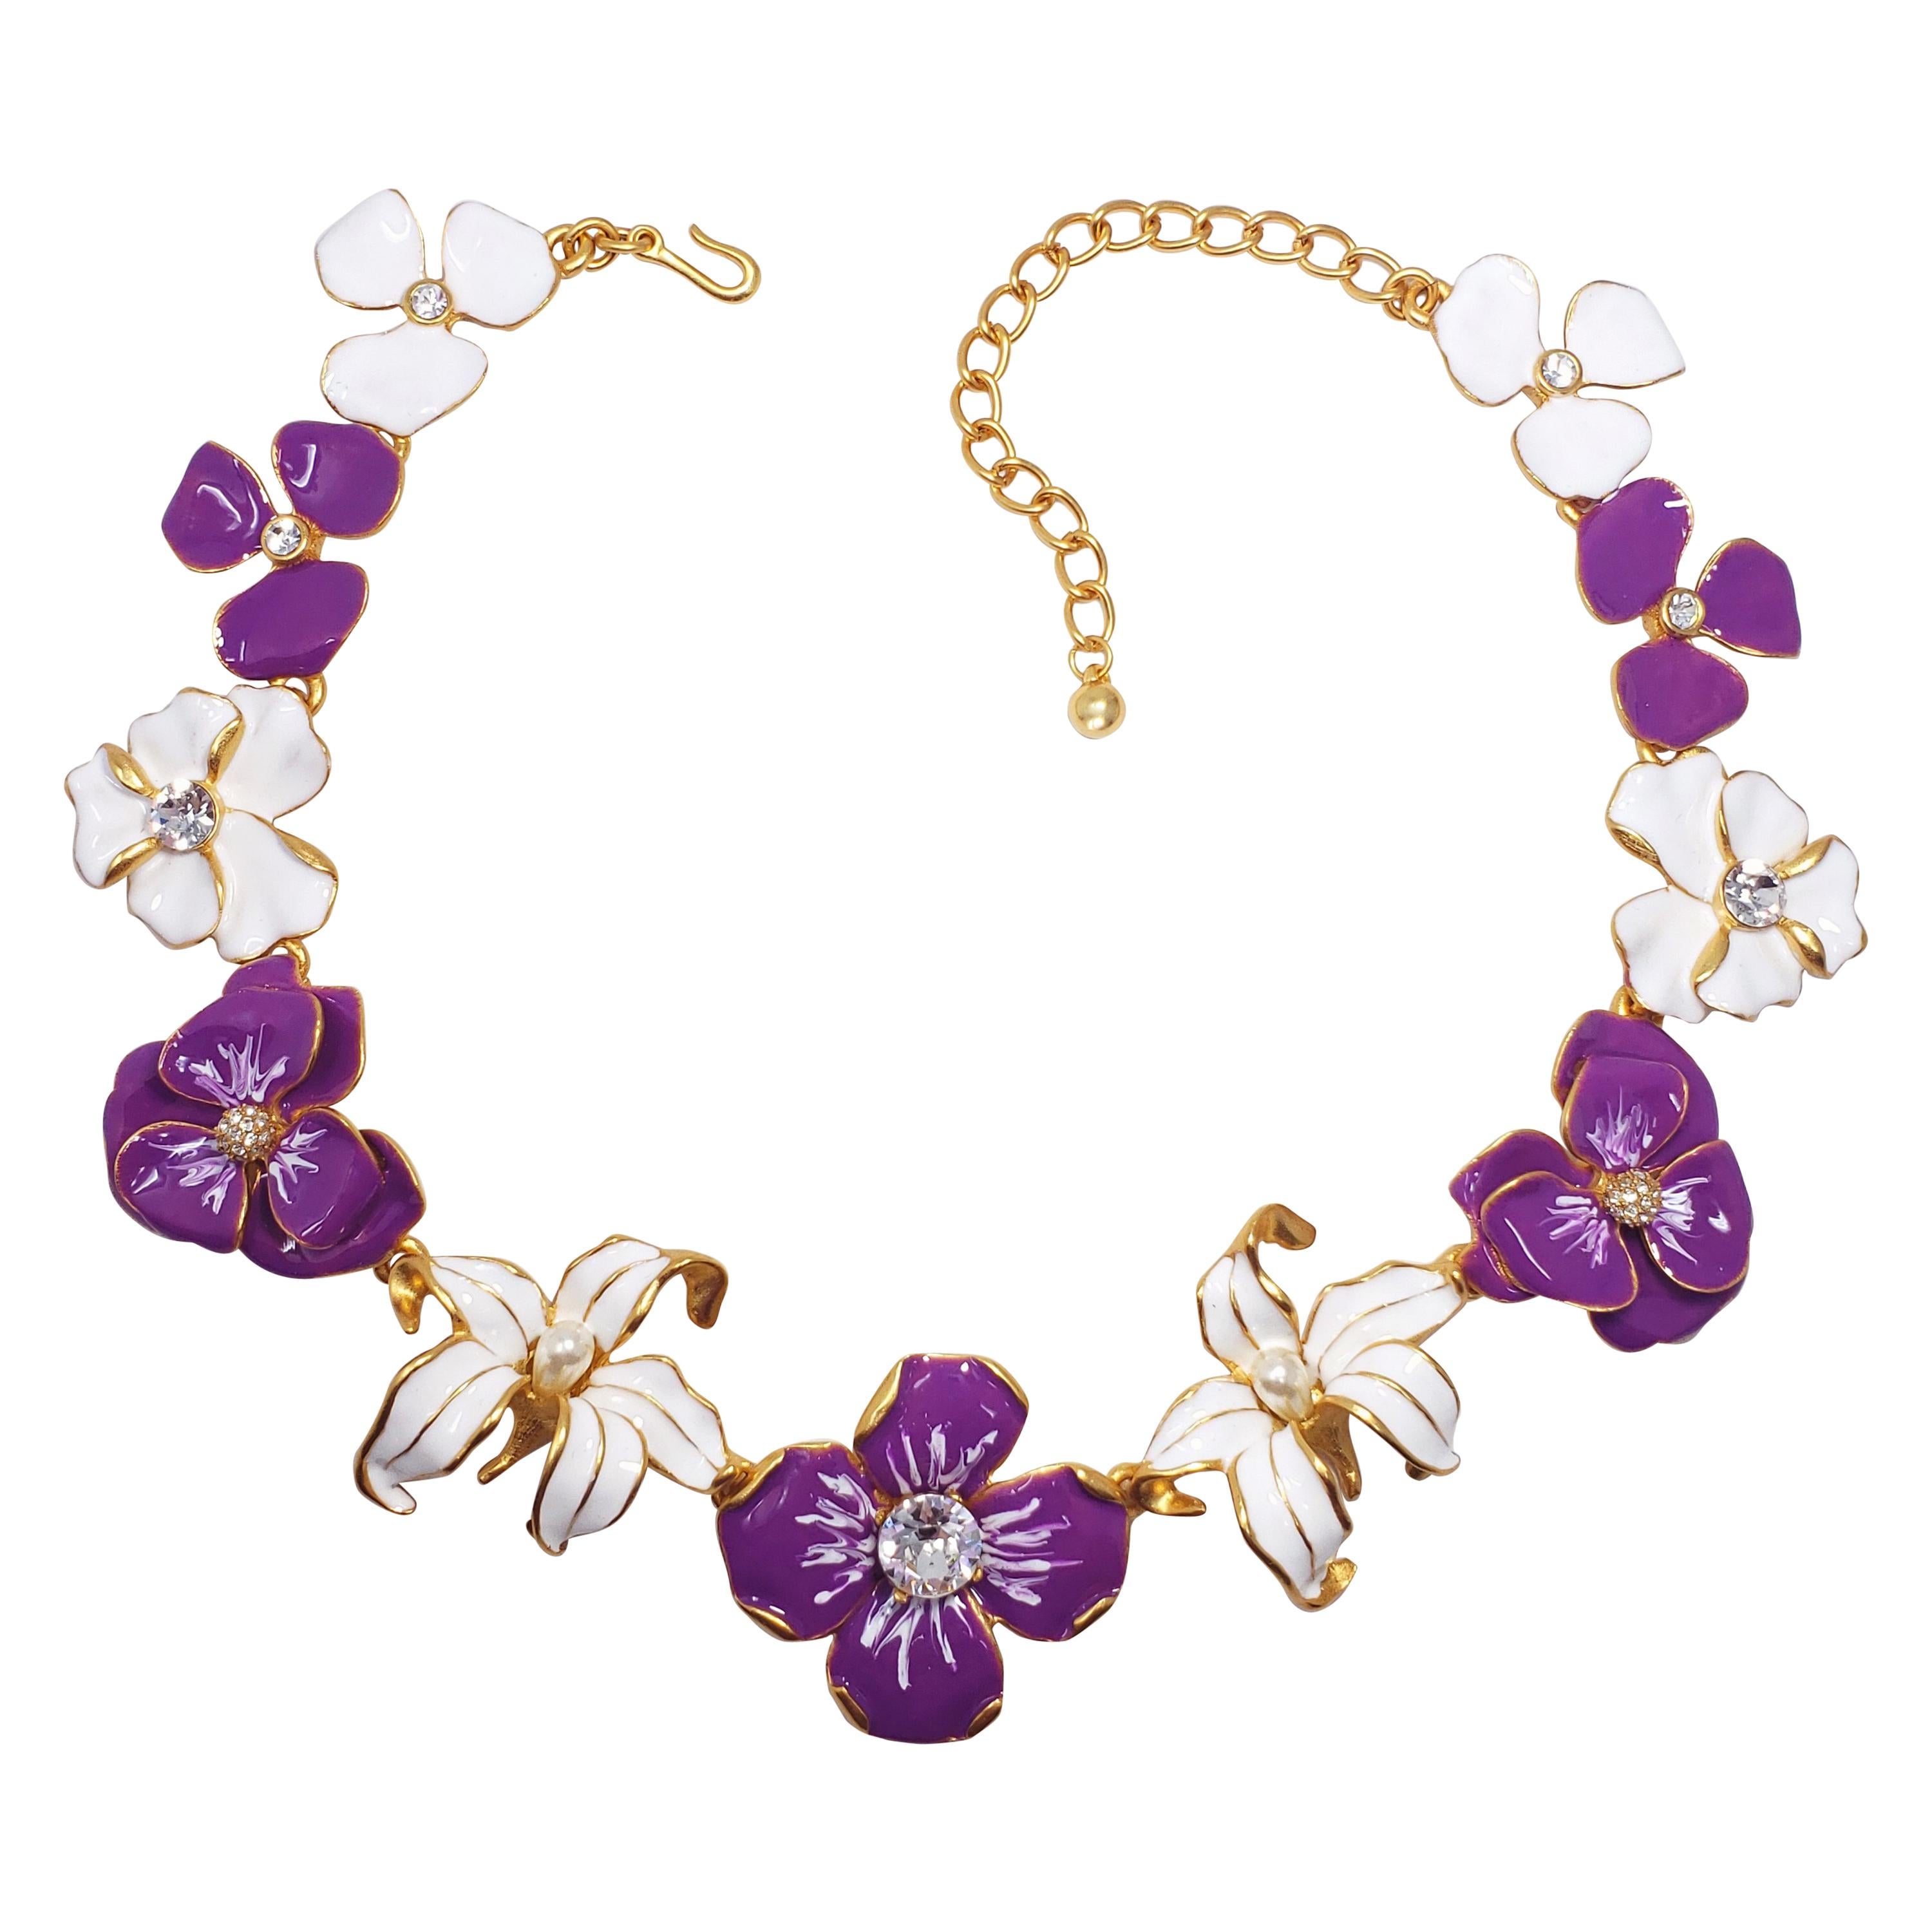 KJL Kenneth Jay Lane Flower Necklace Purple White Enamel Faux Pearl & Crystals